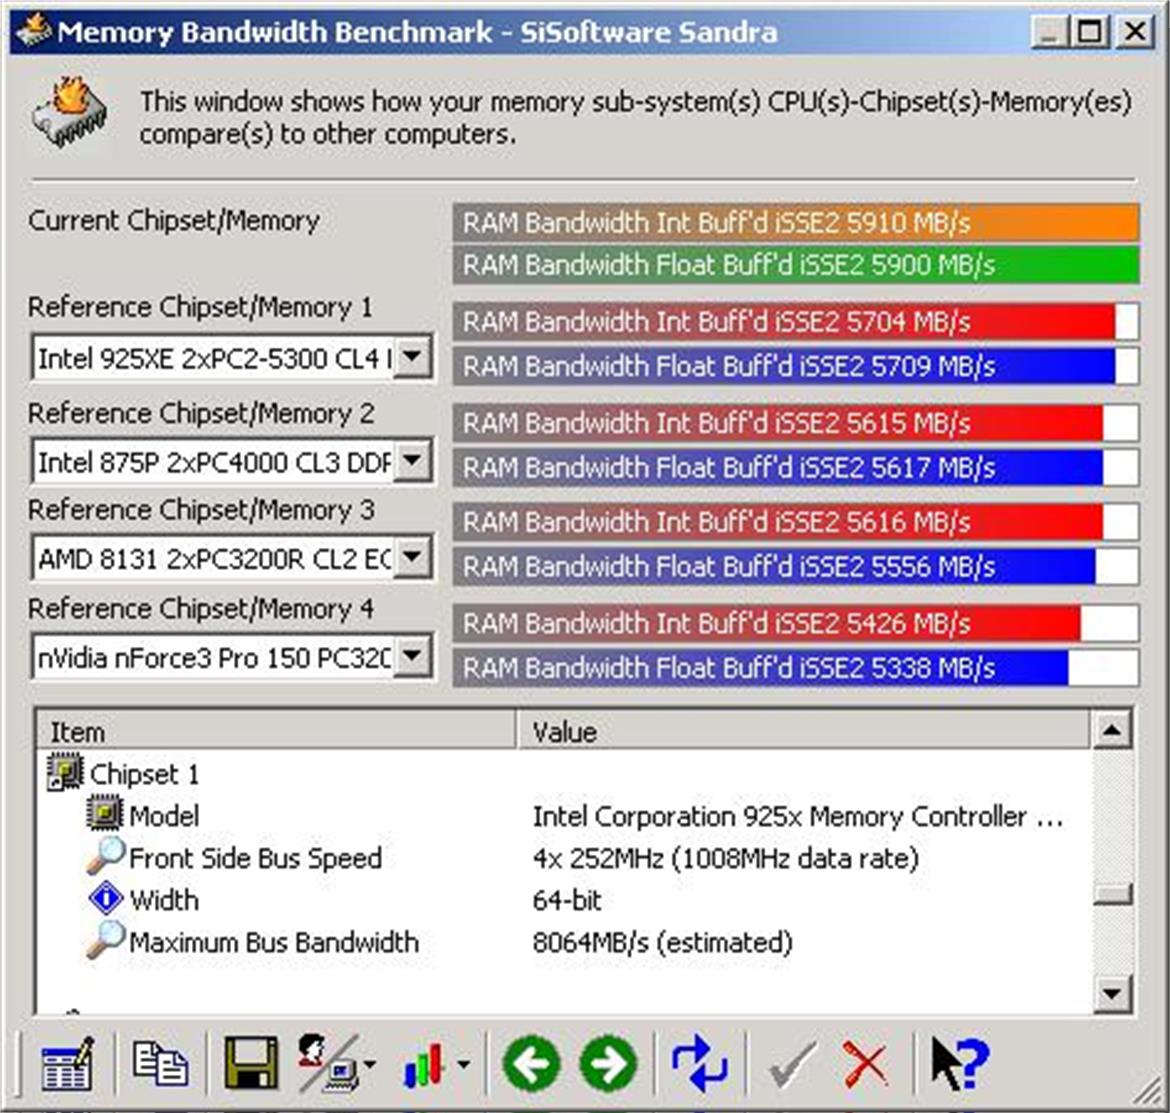 PQI's PQI24200-1GDB DDR2 Turbo Memory Kit